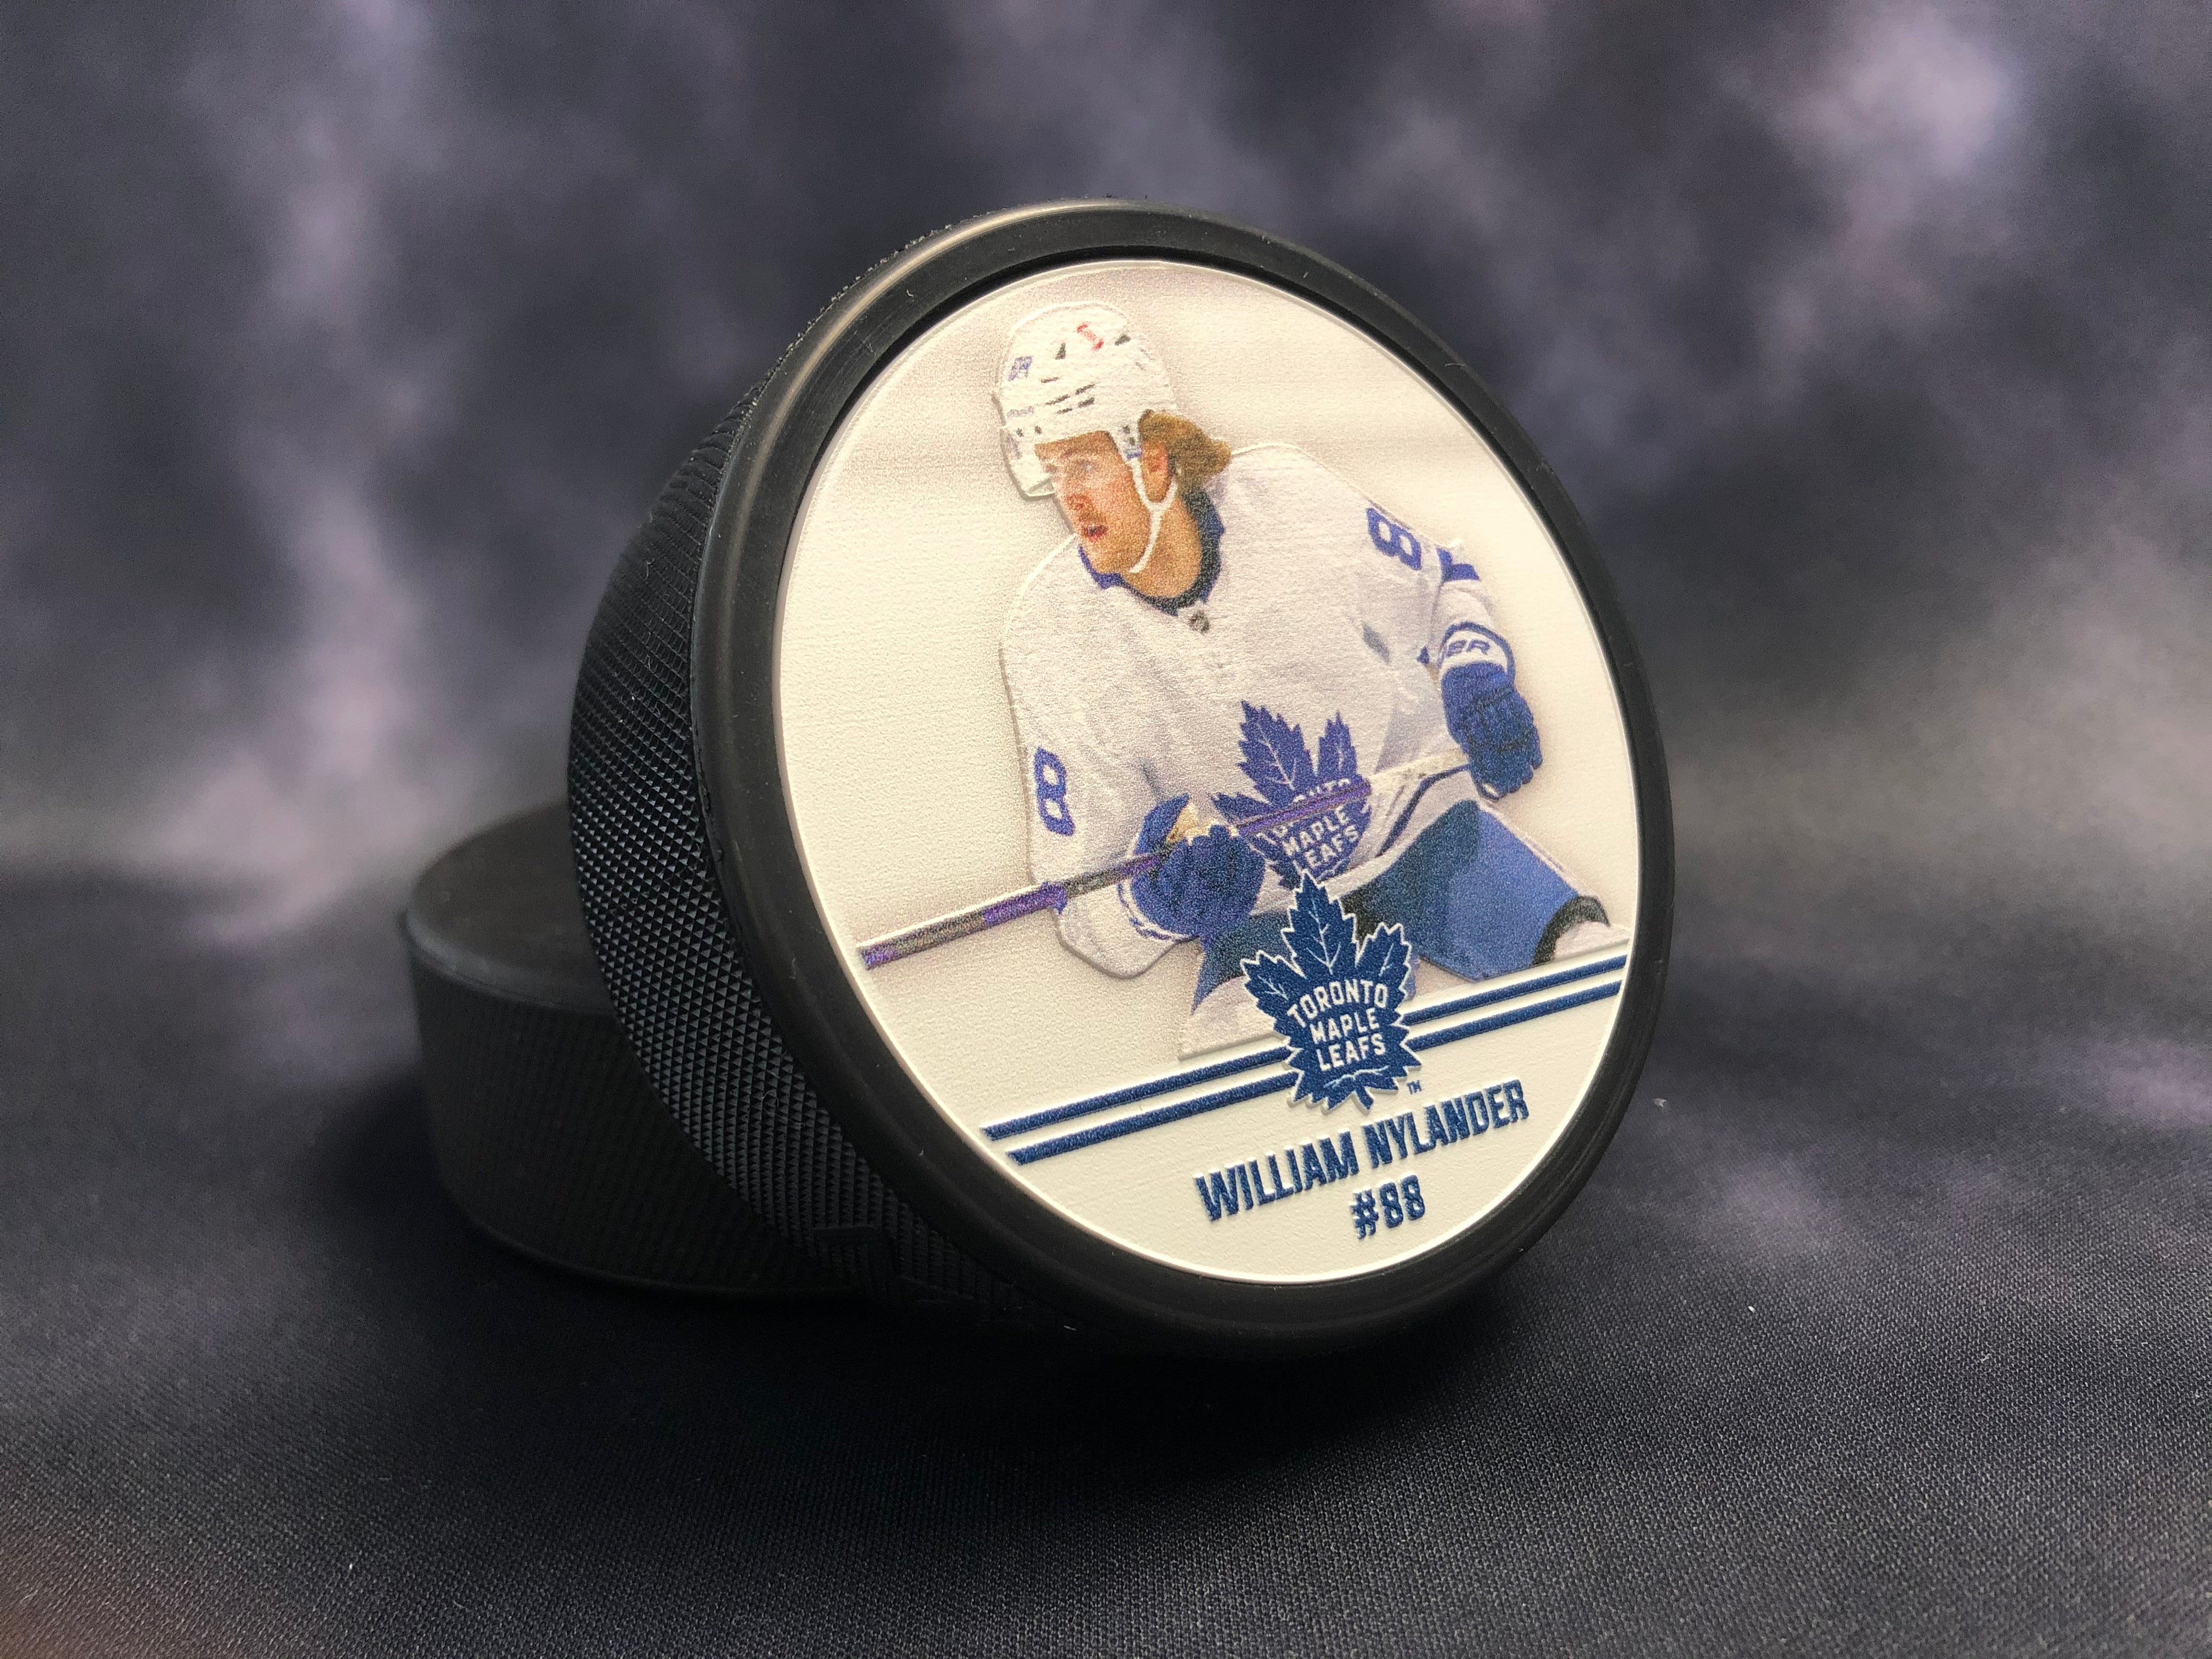 Maple Leafs Nylander Puck